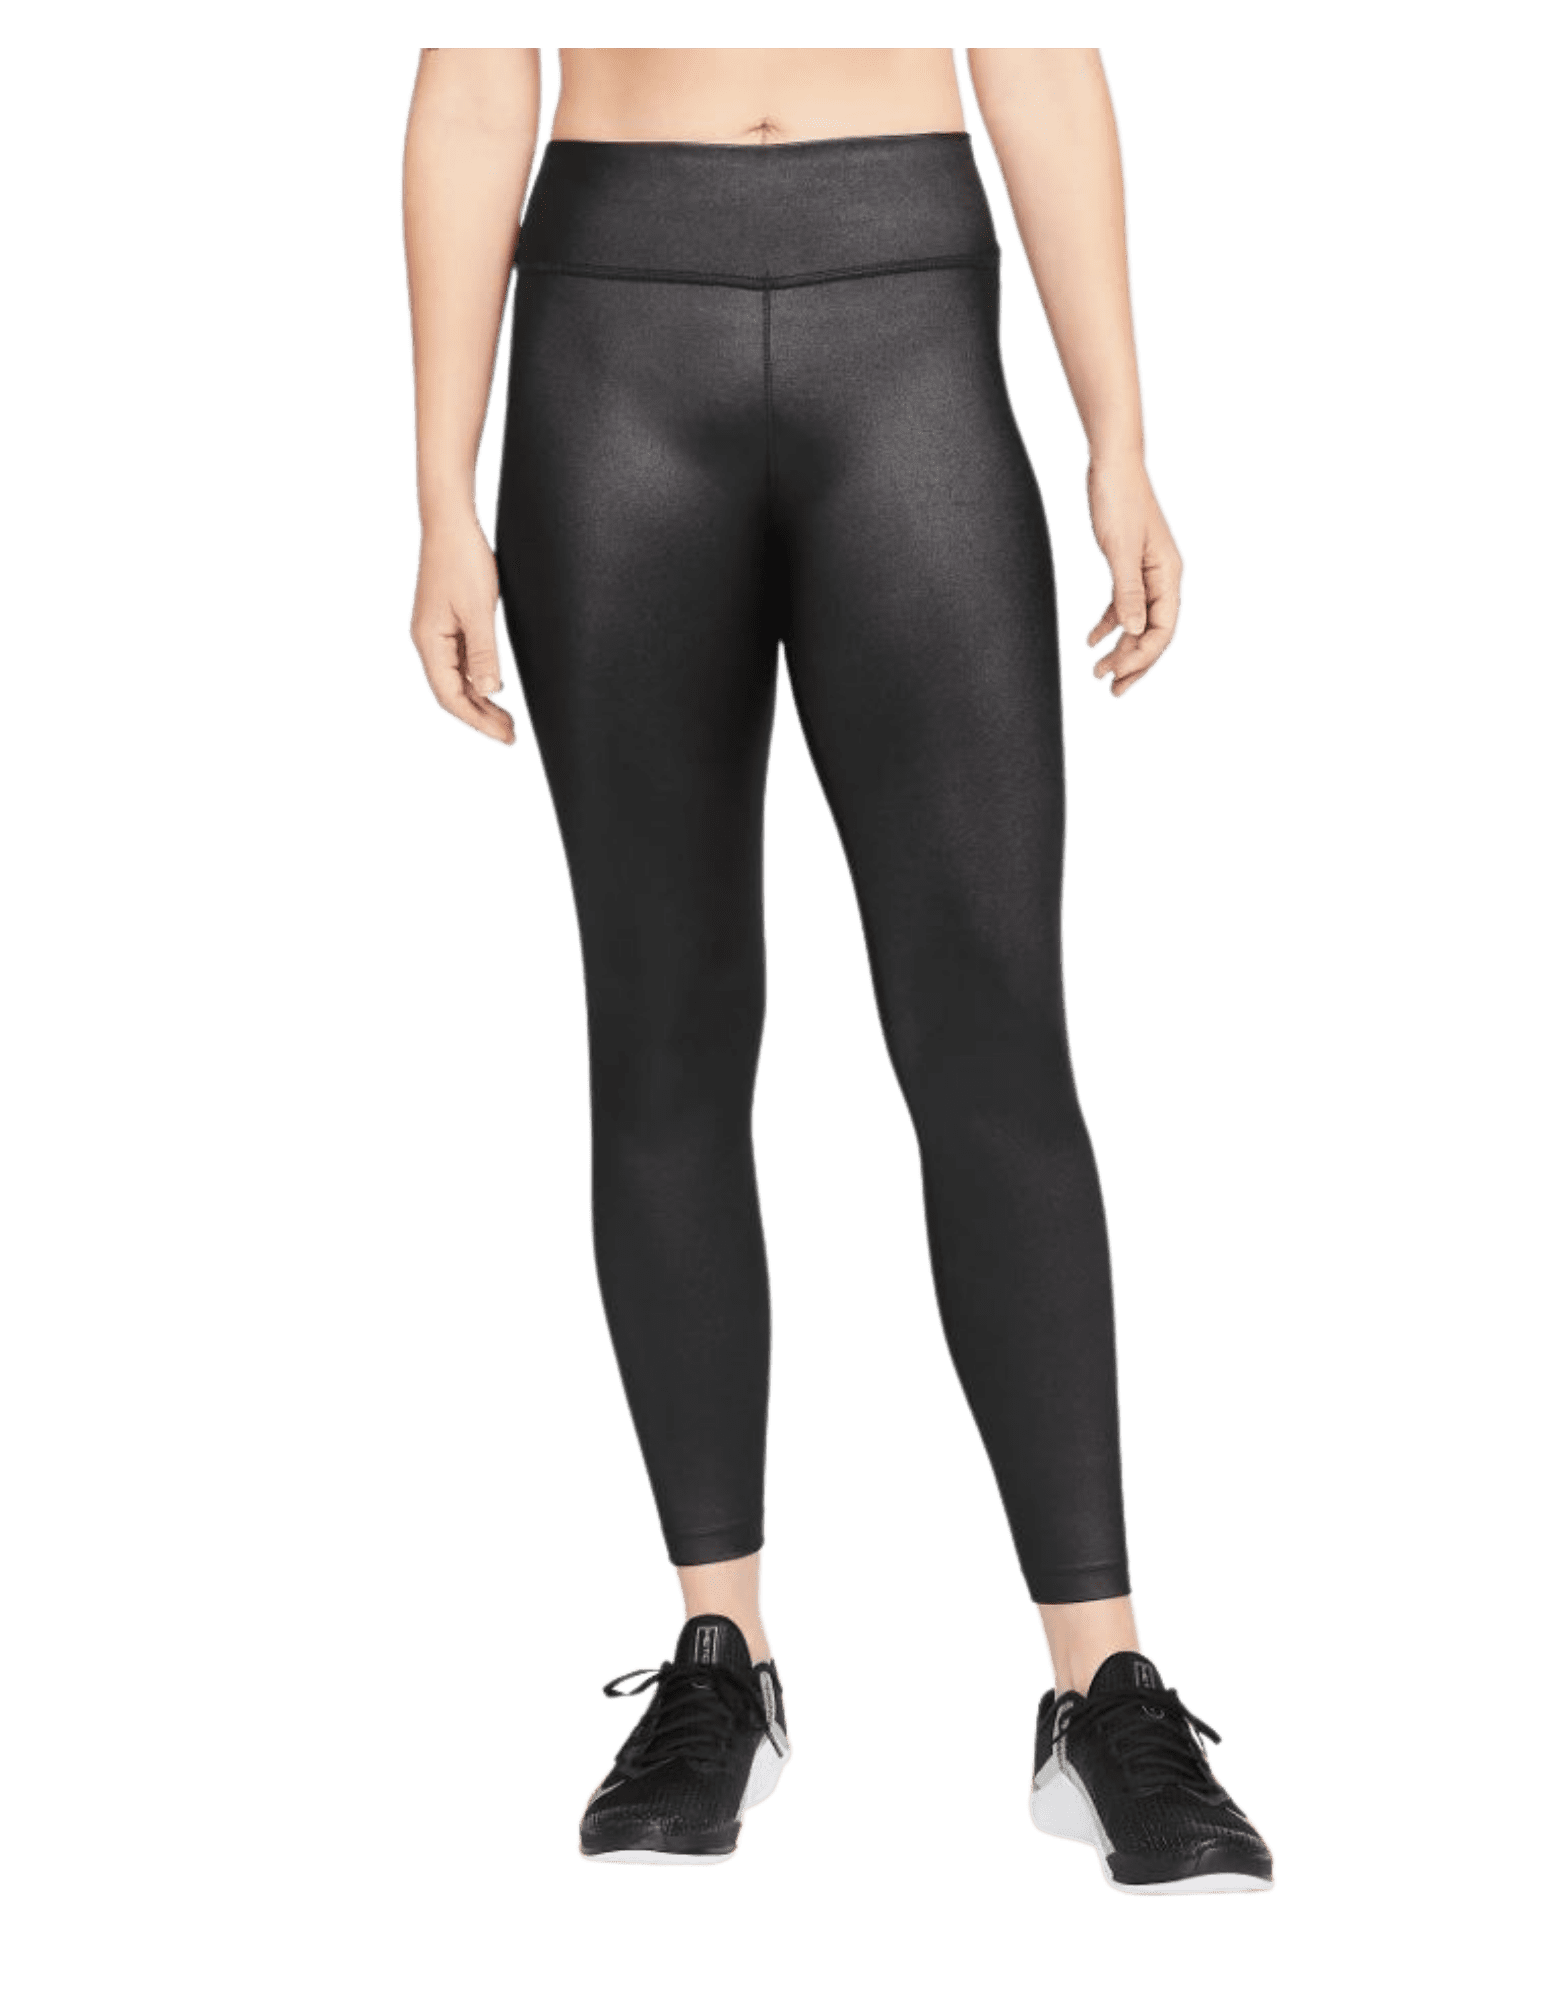 Nike Women's Dri-Fit One Mid-Rise Shine Legging Pants (Black/White, X-Large)  